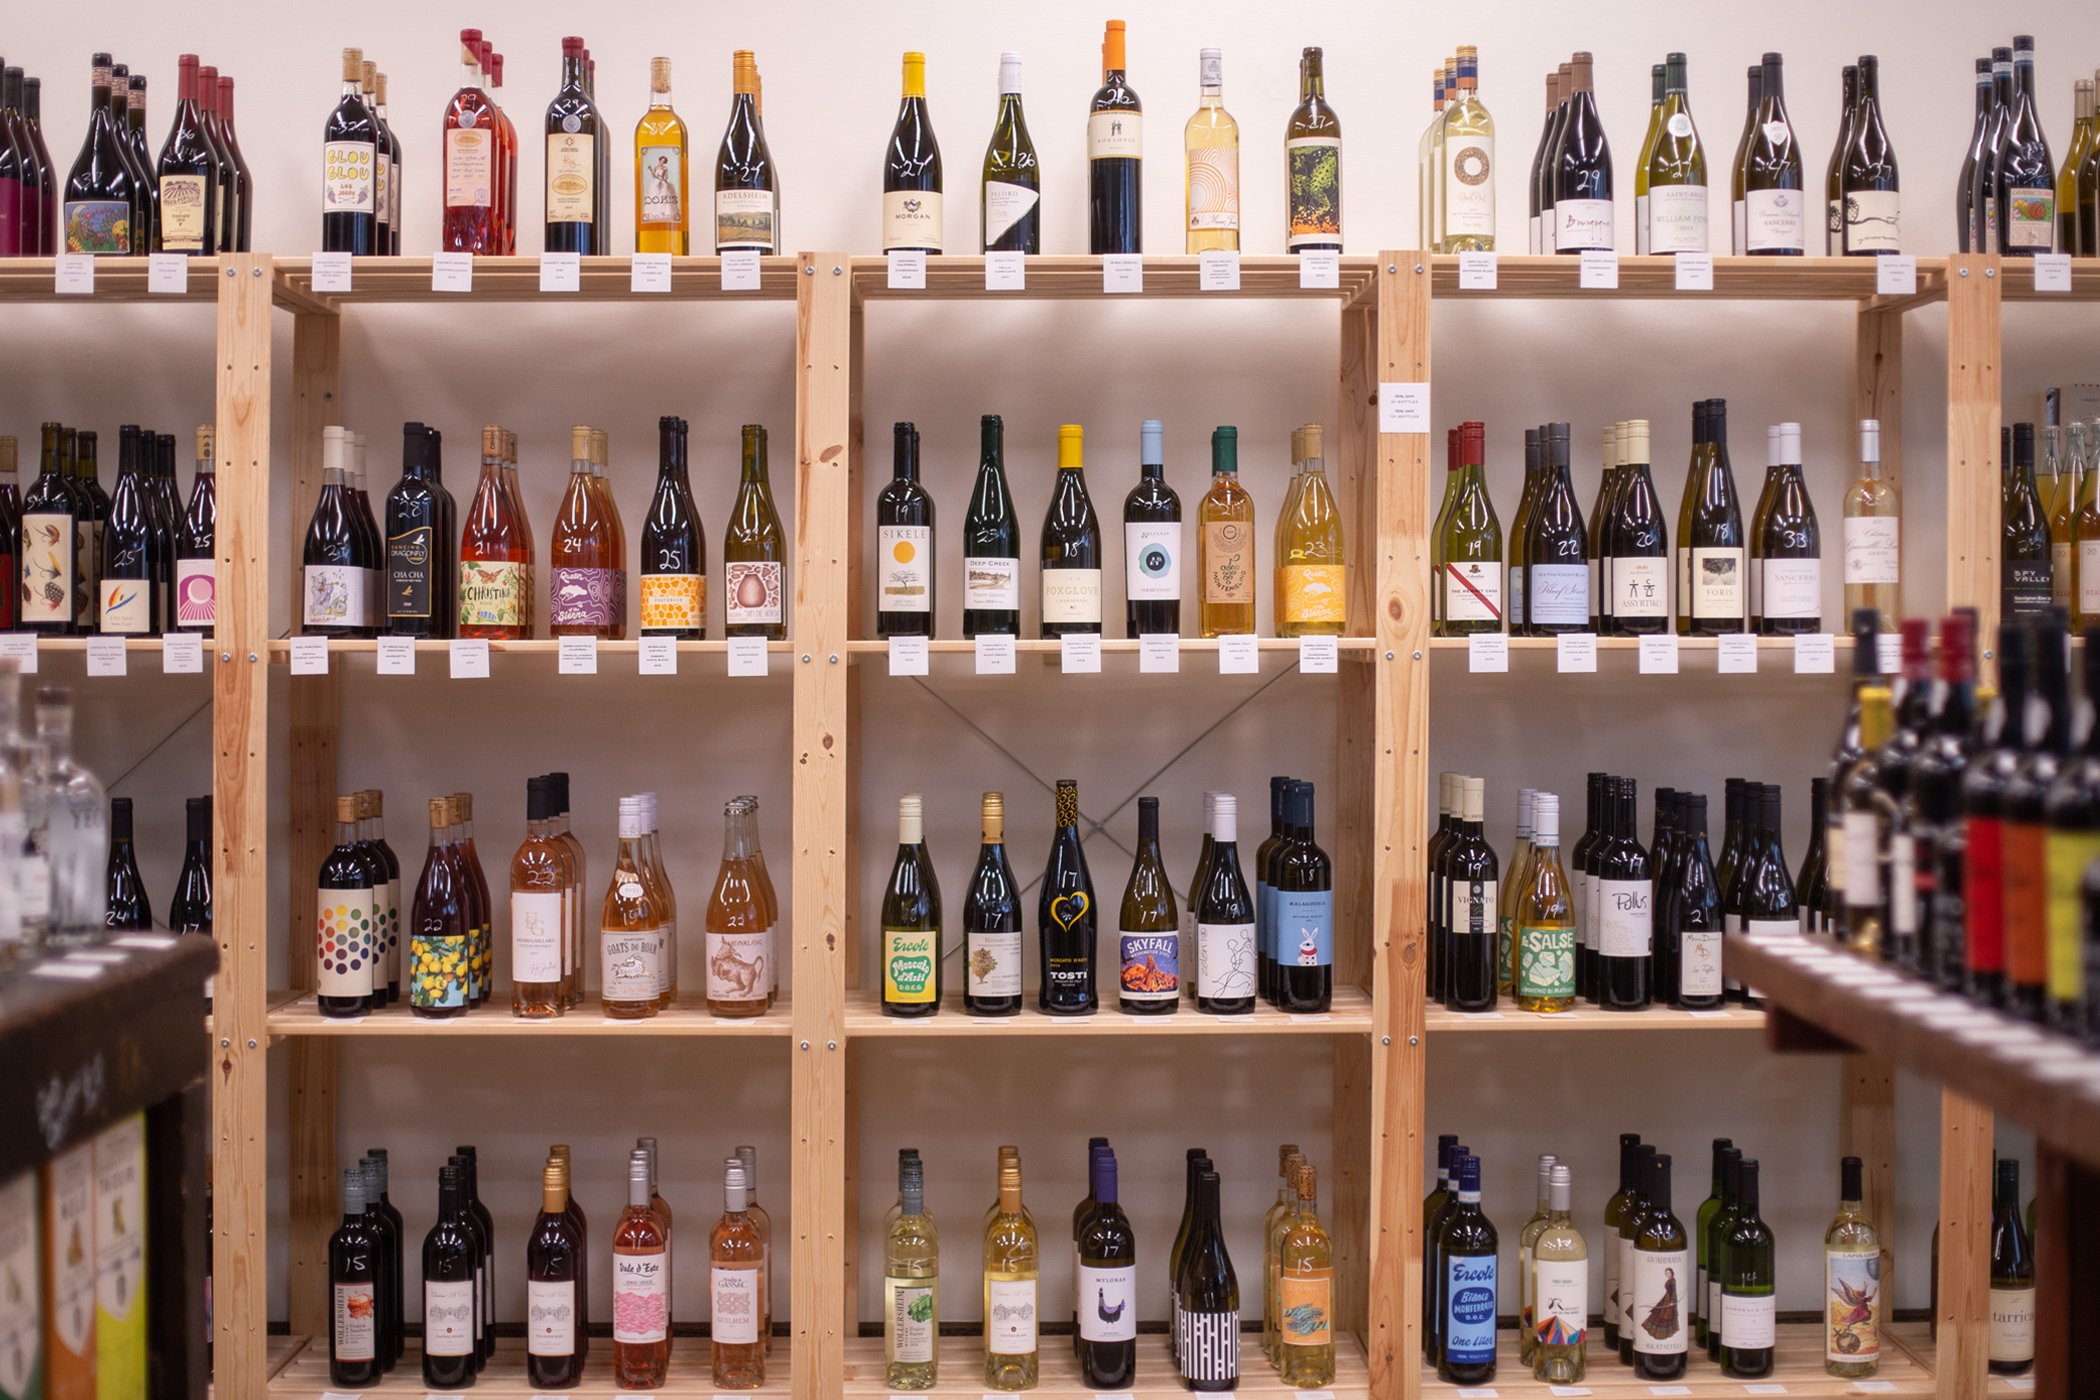 Clarity-Wine-Shop-bottles-on-shelves.jpg